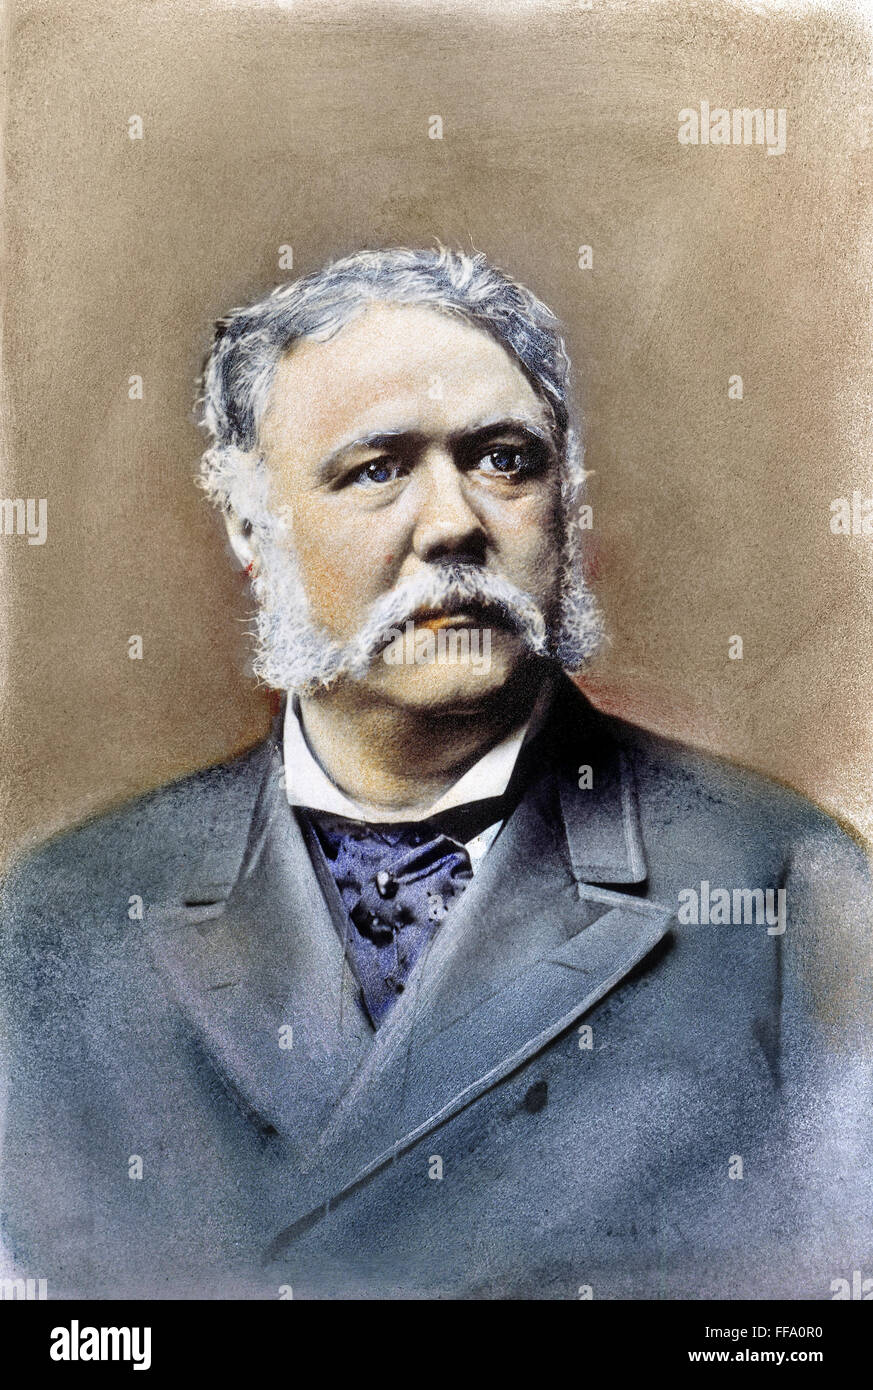 CHESTER ALAN ARTHUR /n(1830-1886). 21. Präsident der Vereinigten Staaten. Öl über ein Foto, c1881. Stockfoto